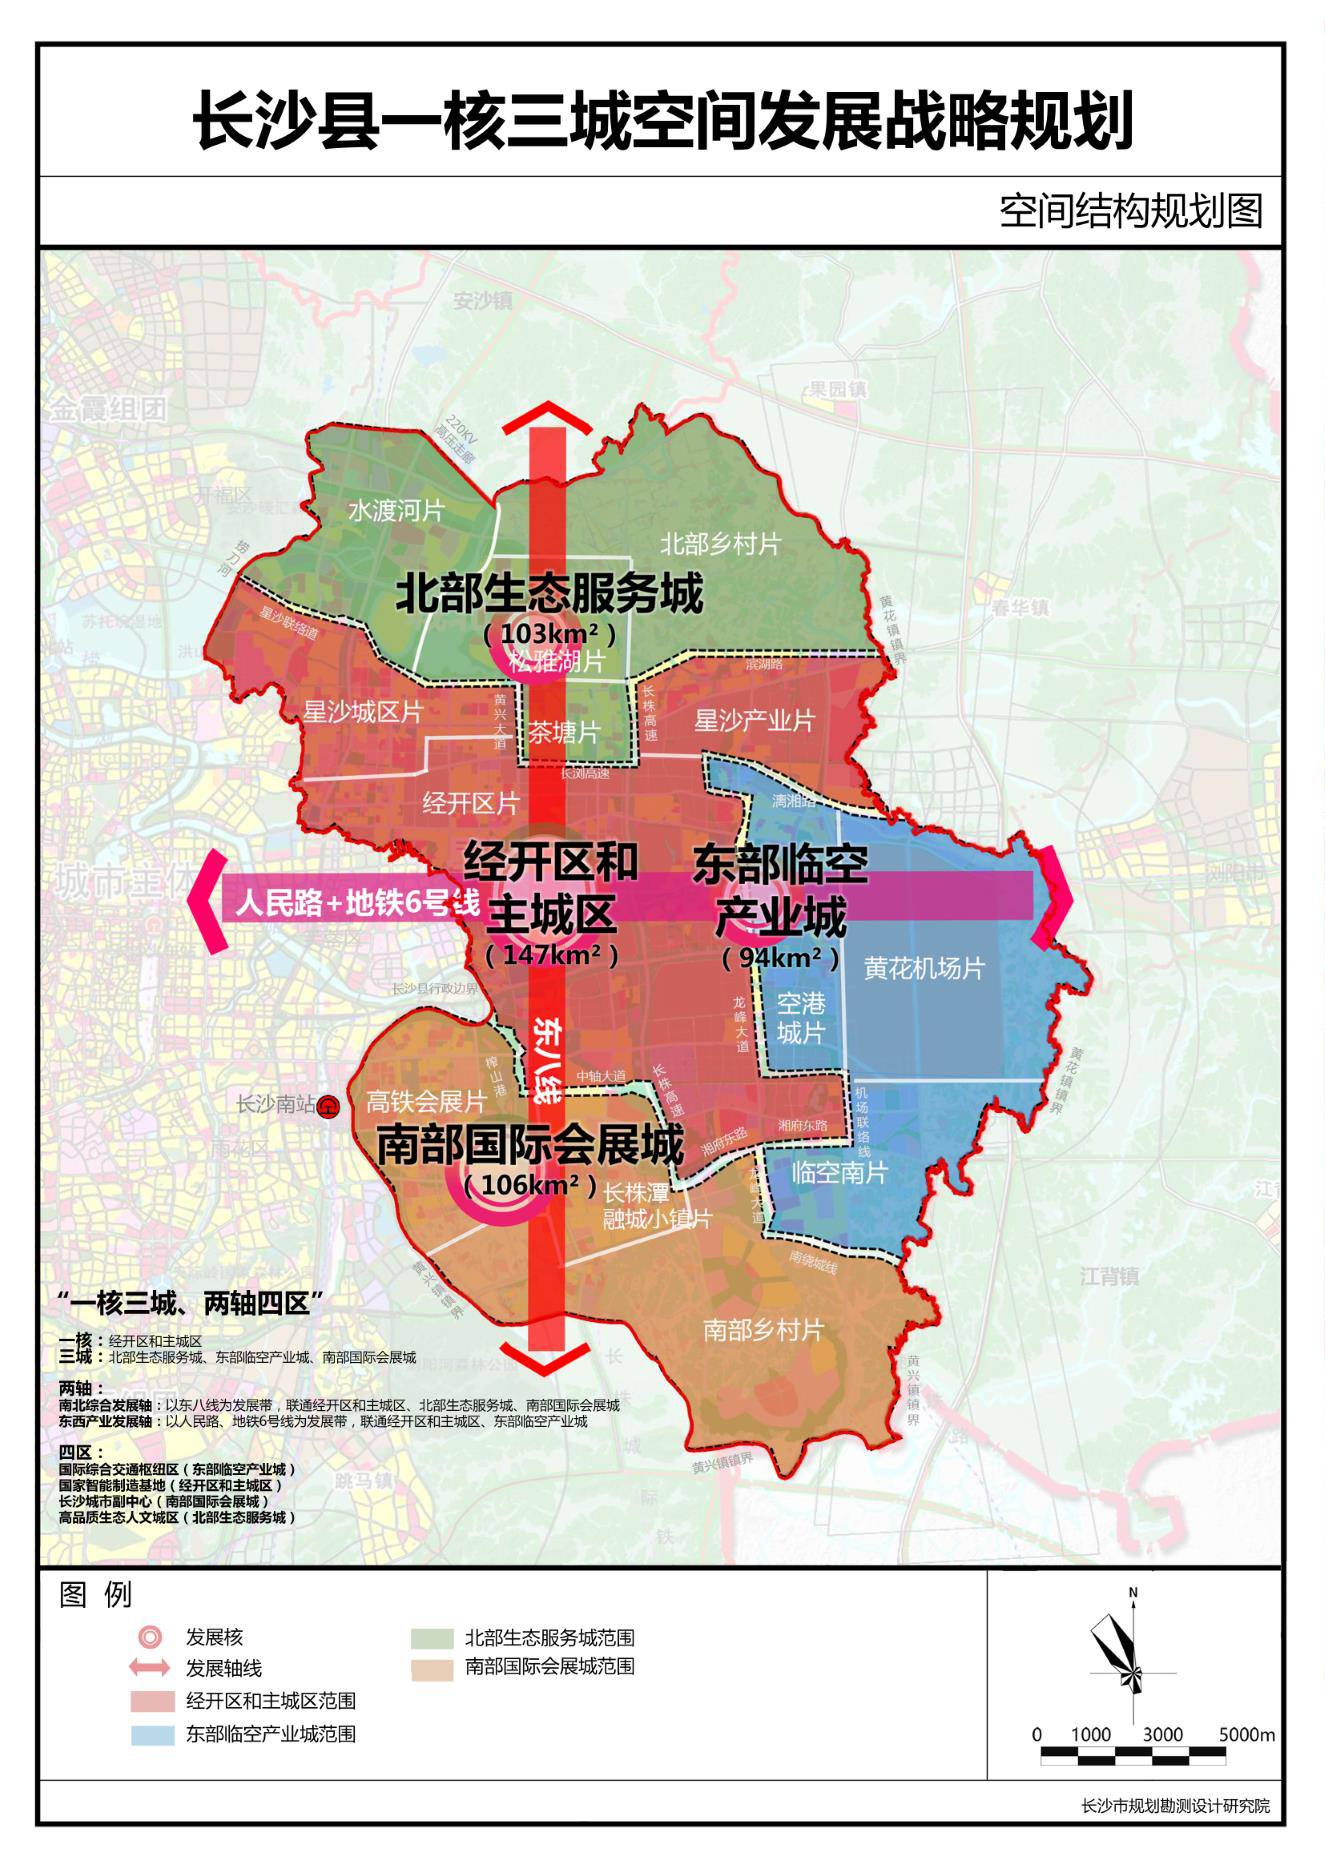 长沙县"一核三城"空间发展战略规划图